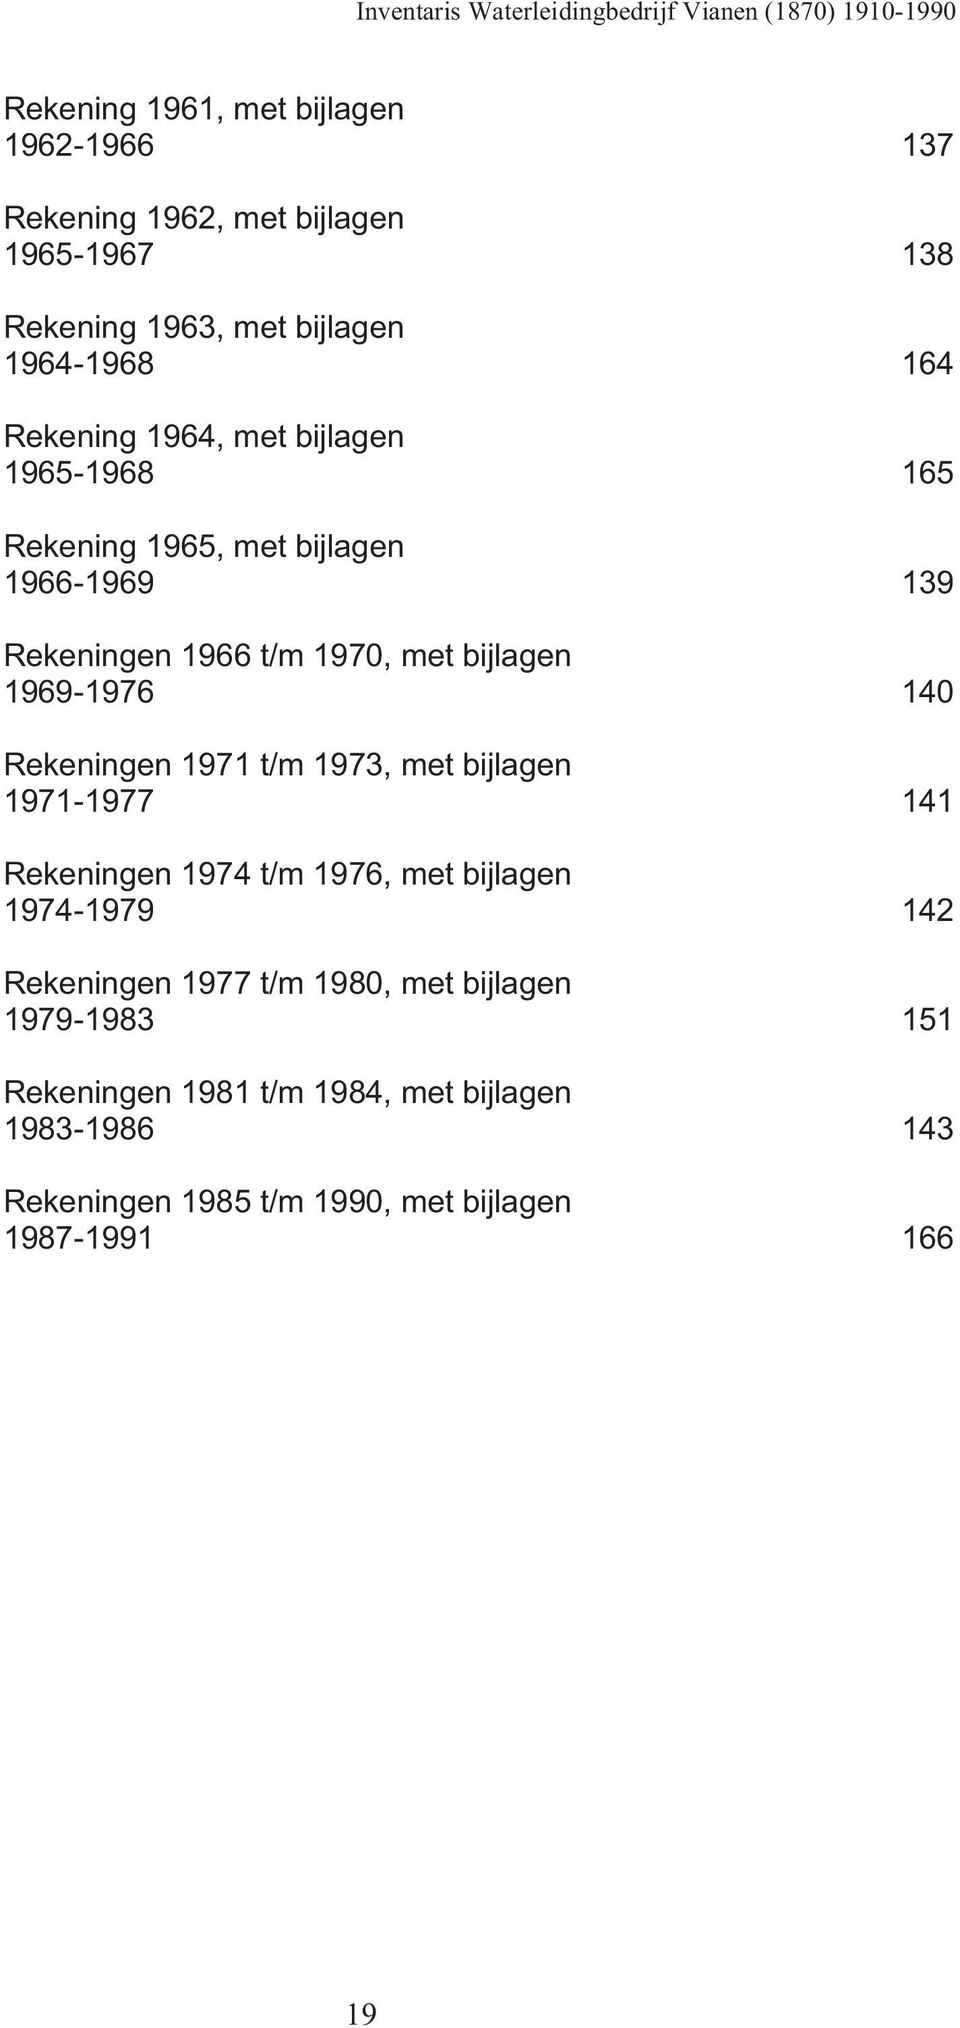 140 Rekeningen 1971 t/m 1973, met bijlagen 1971-1977 141 Rekeningen 1974 t/m 1976, met bijlagen 1974-1979 142 Rekeningen 1977 t/m